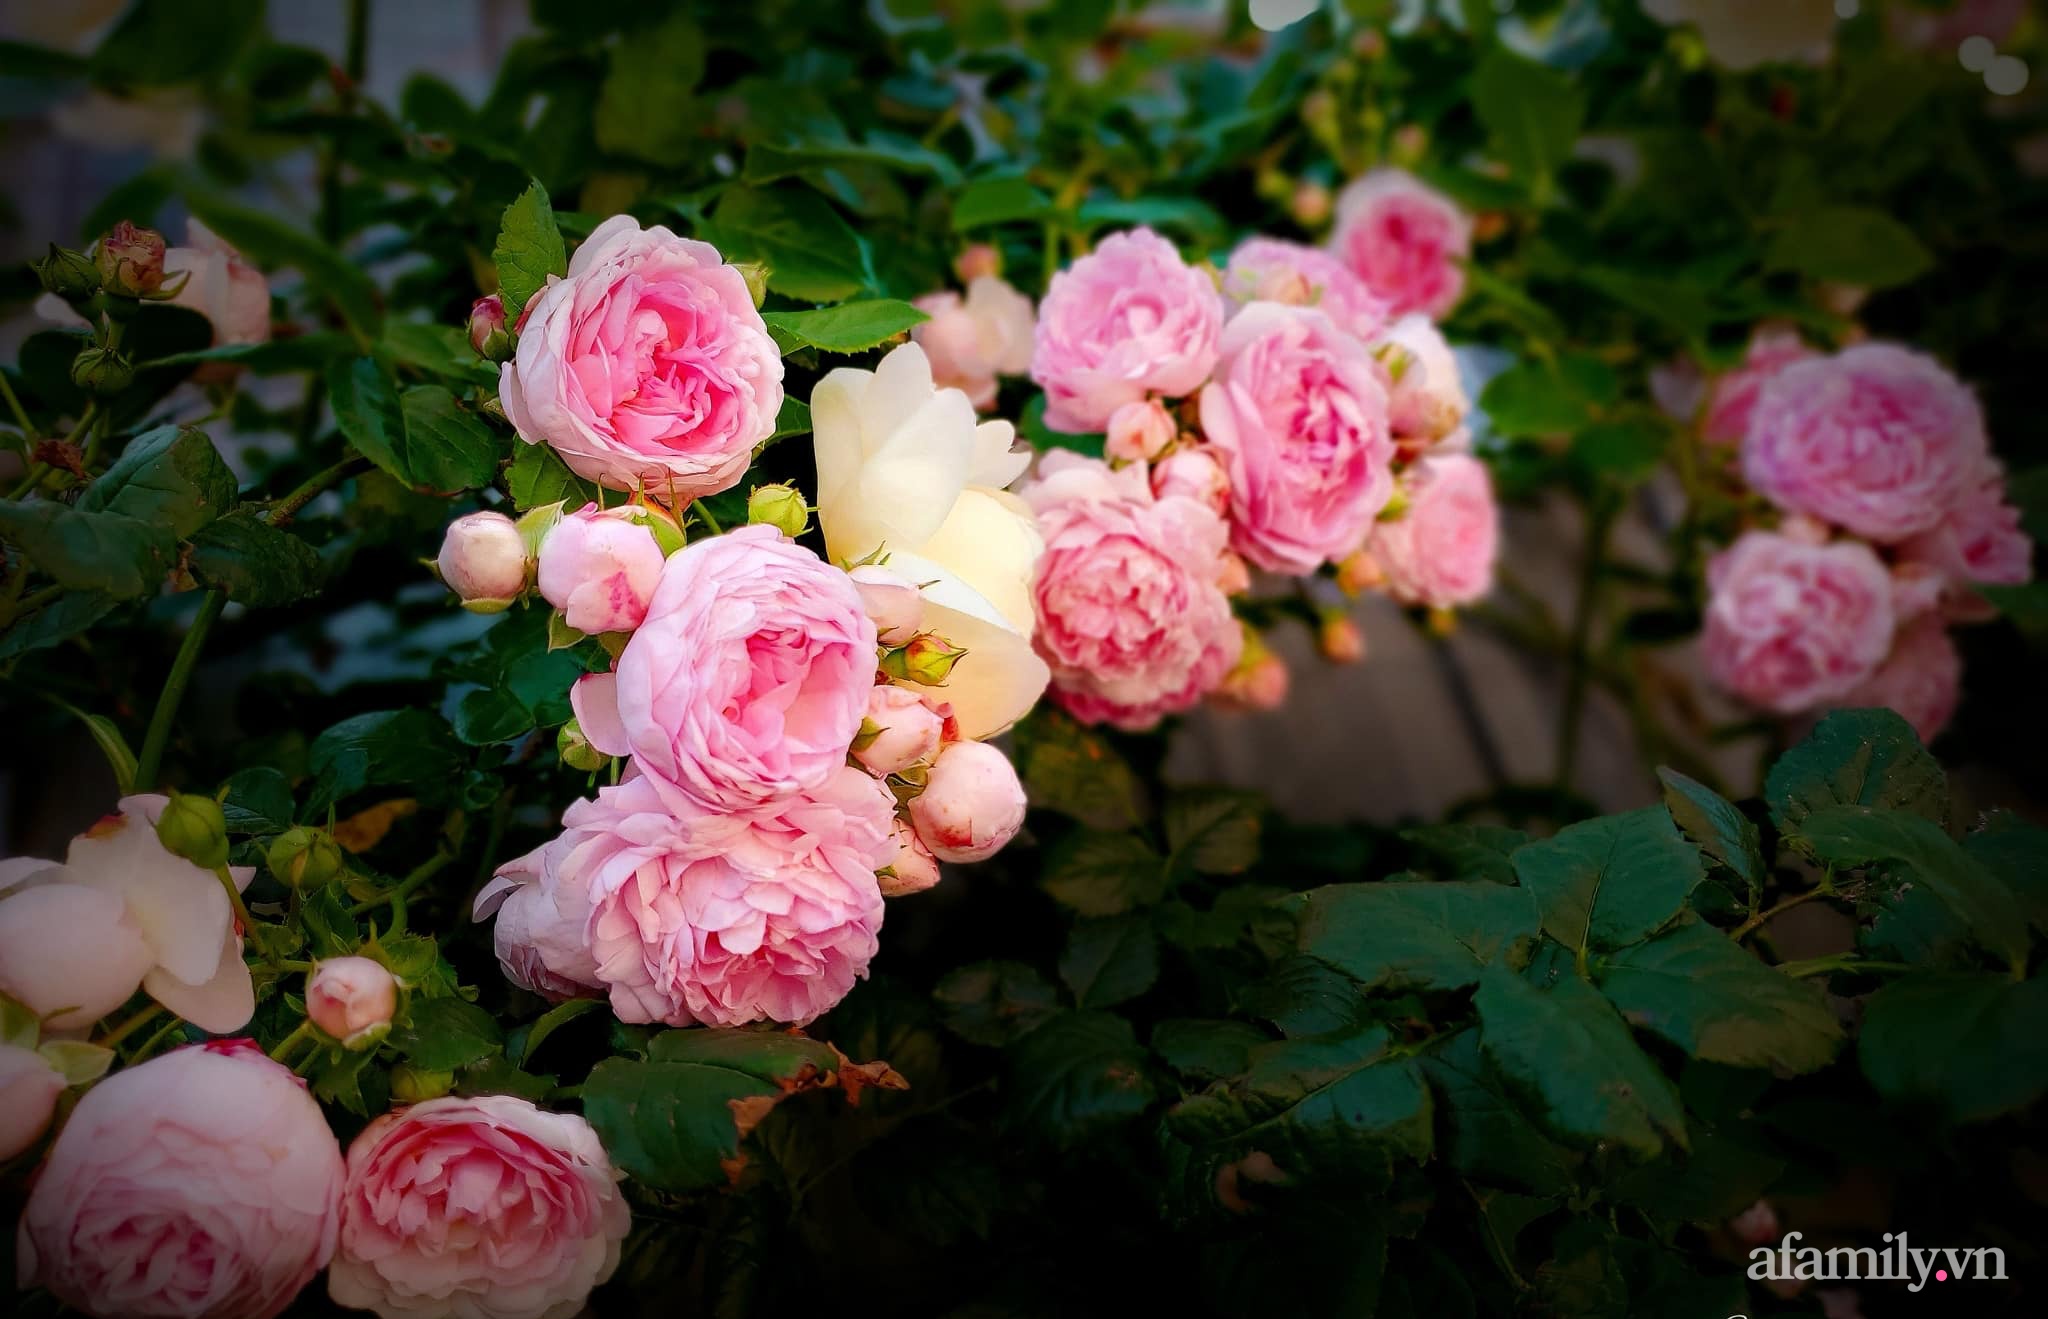 Vườn hồng 250m² ngát hương rực rỡ sắc màu đẹp như cổ tích của mẹ Việt ở Úc - Ảnh 19.